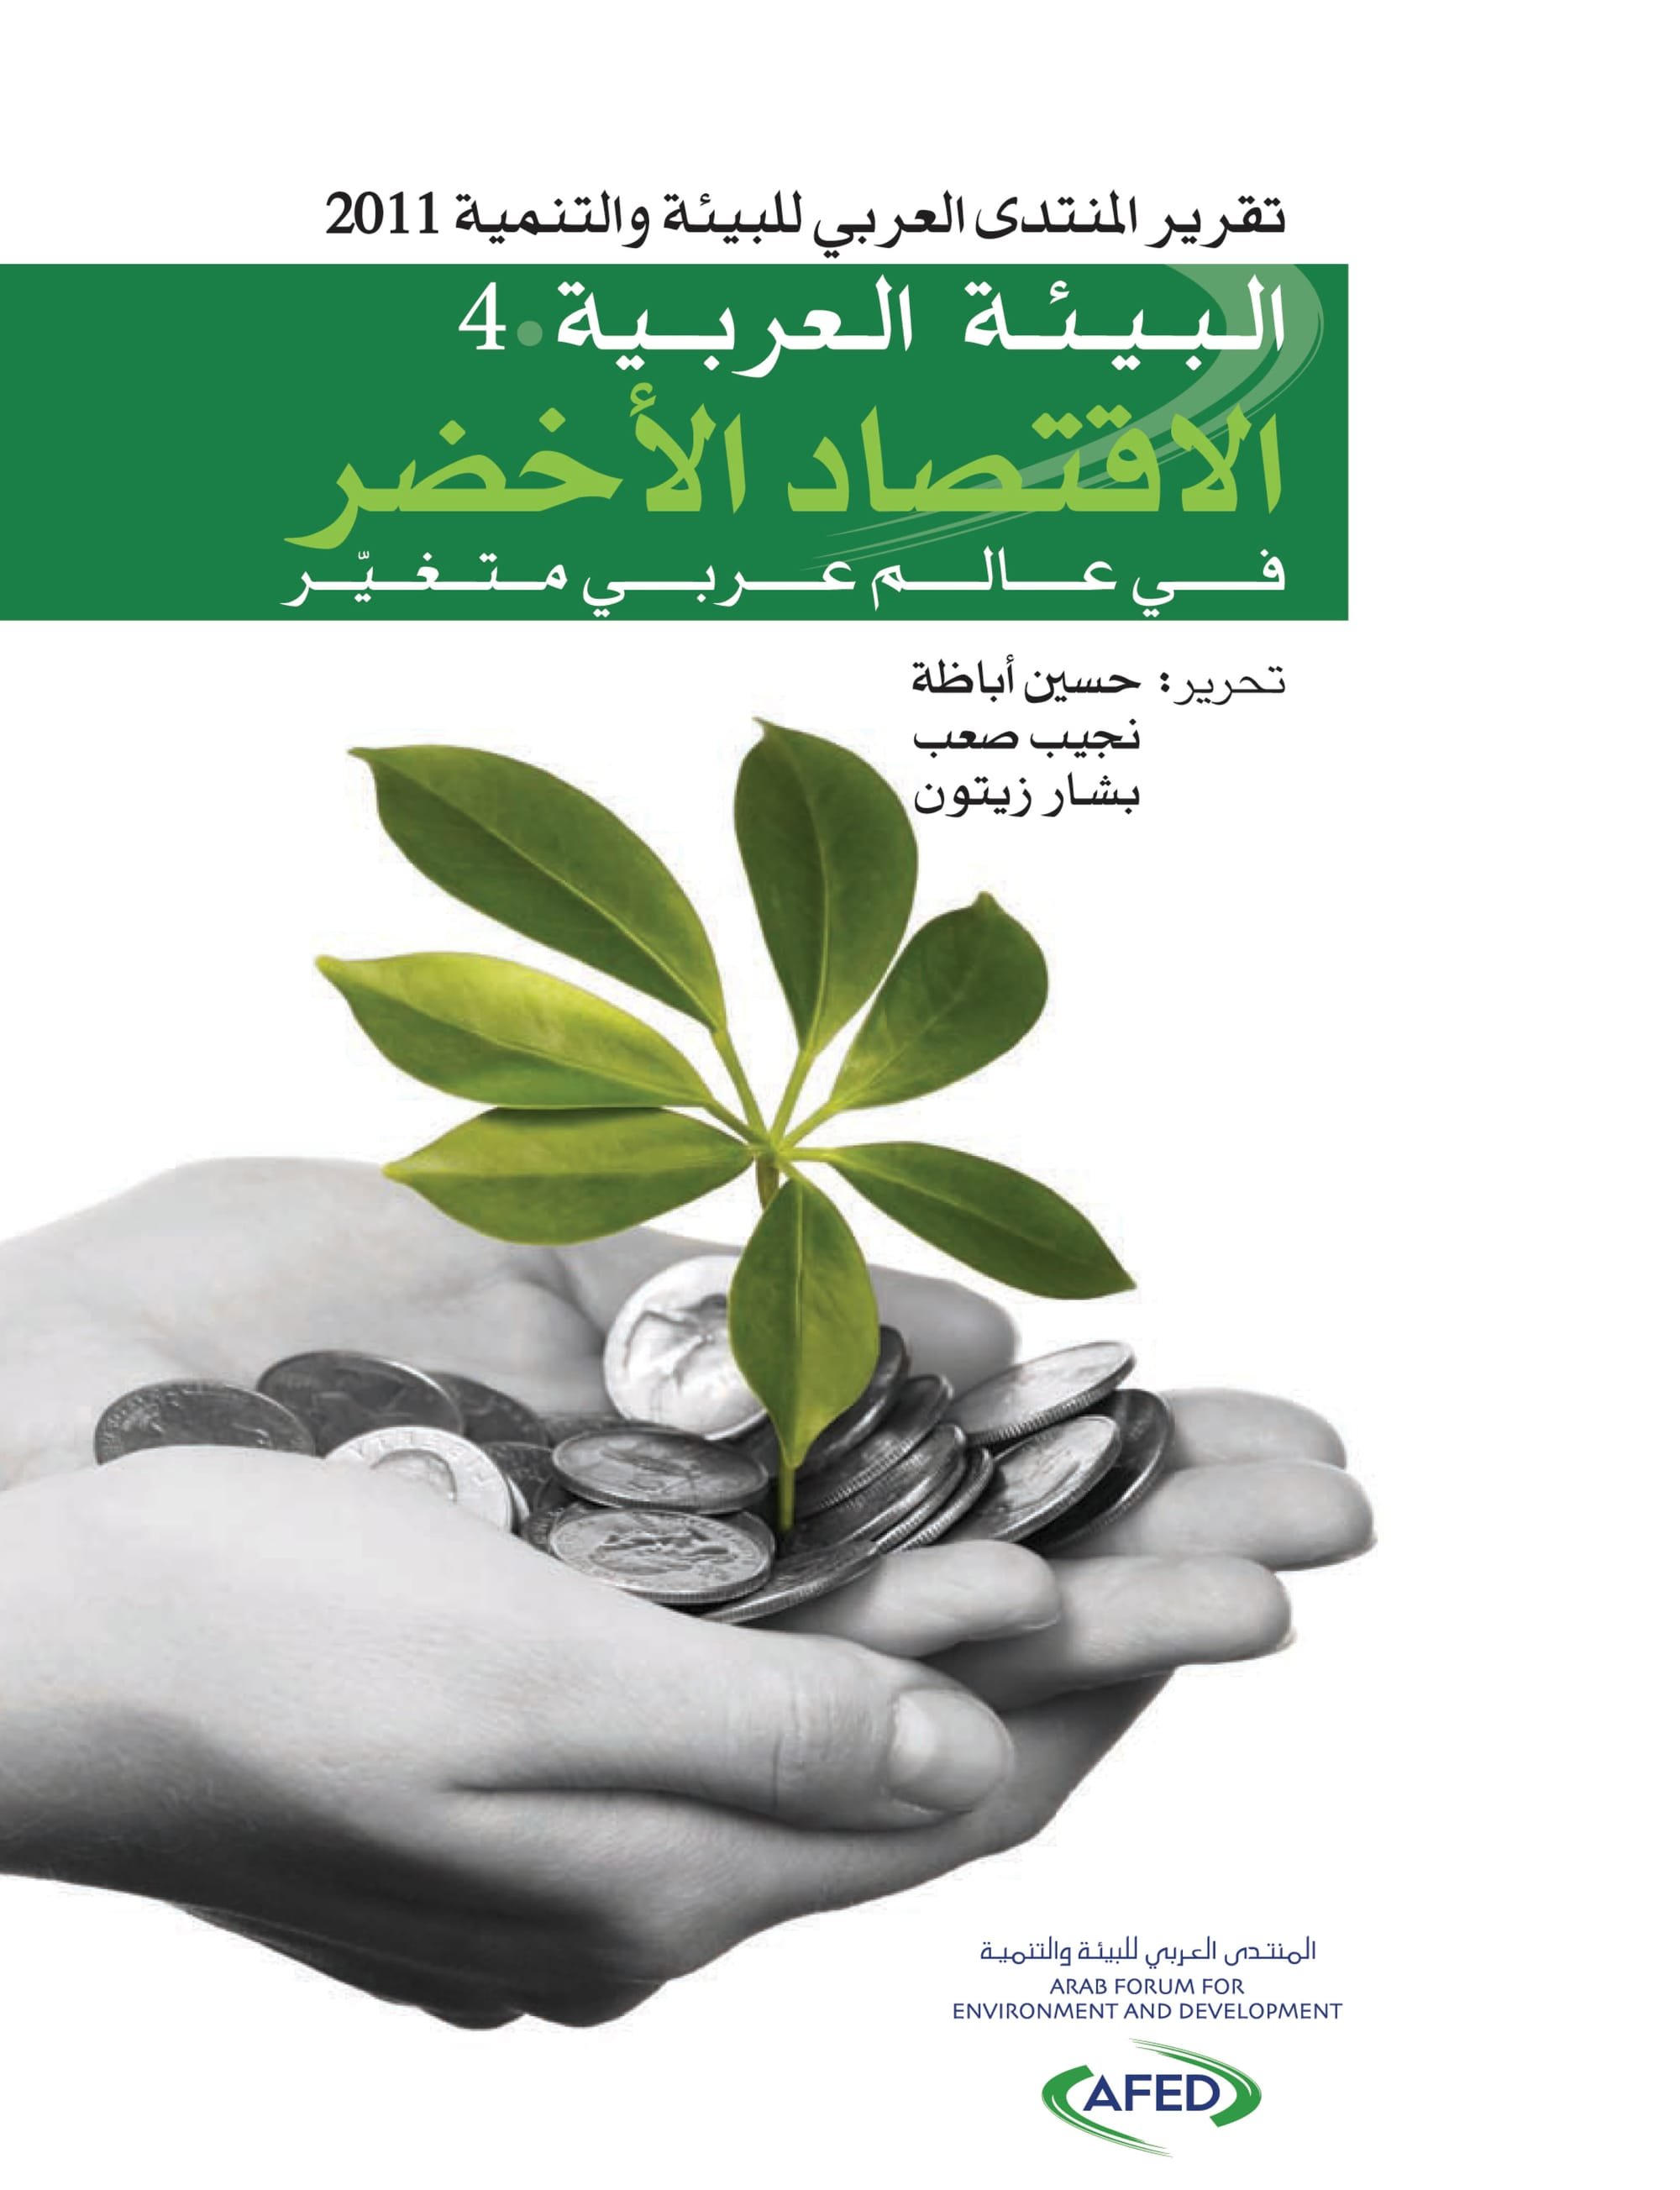 تقرير المنتدى العربي للبيئة والتمية 2011